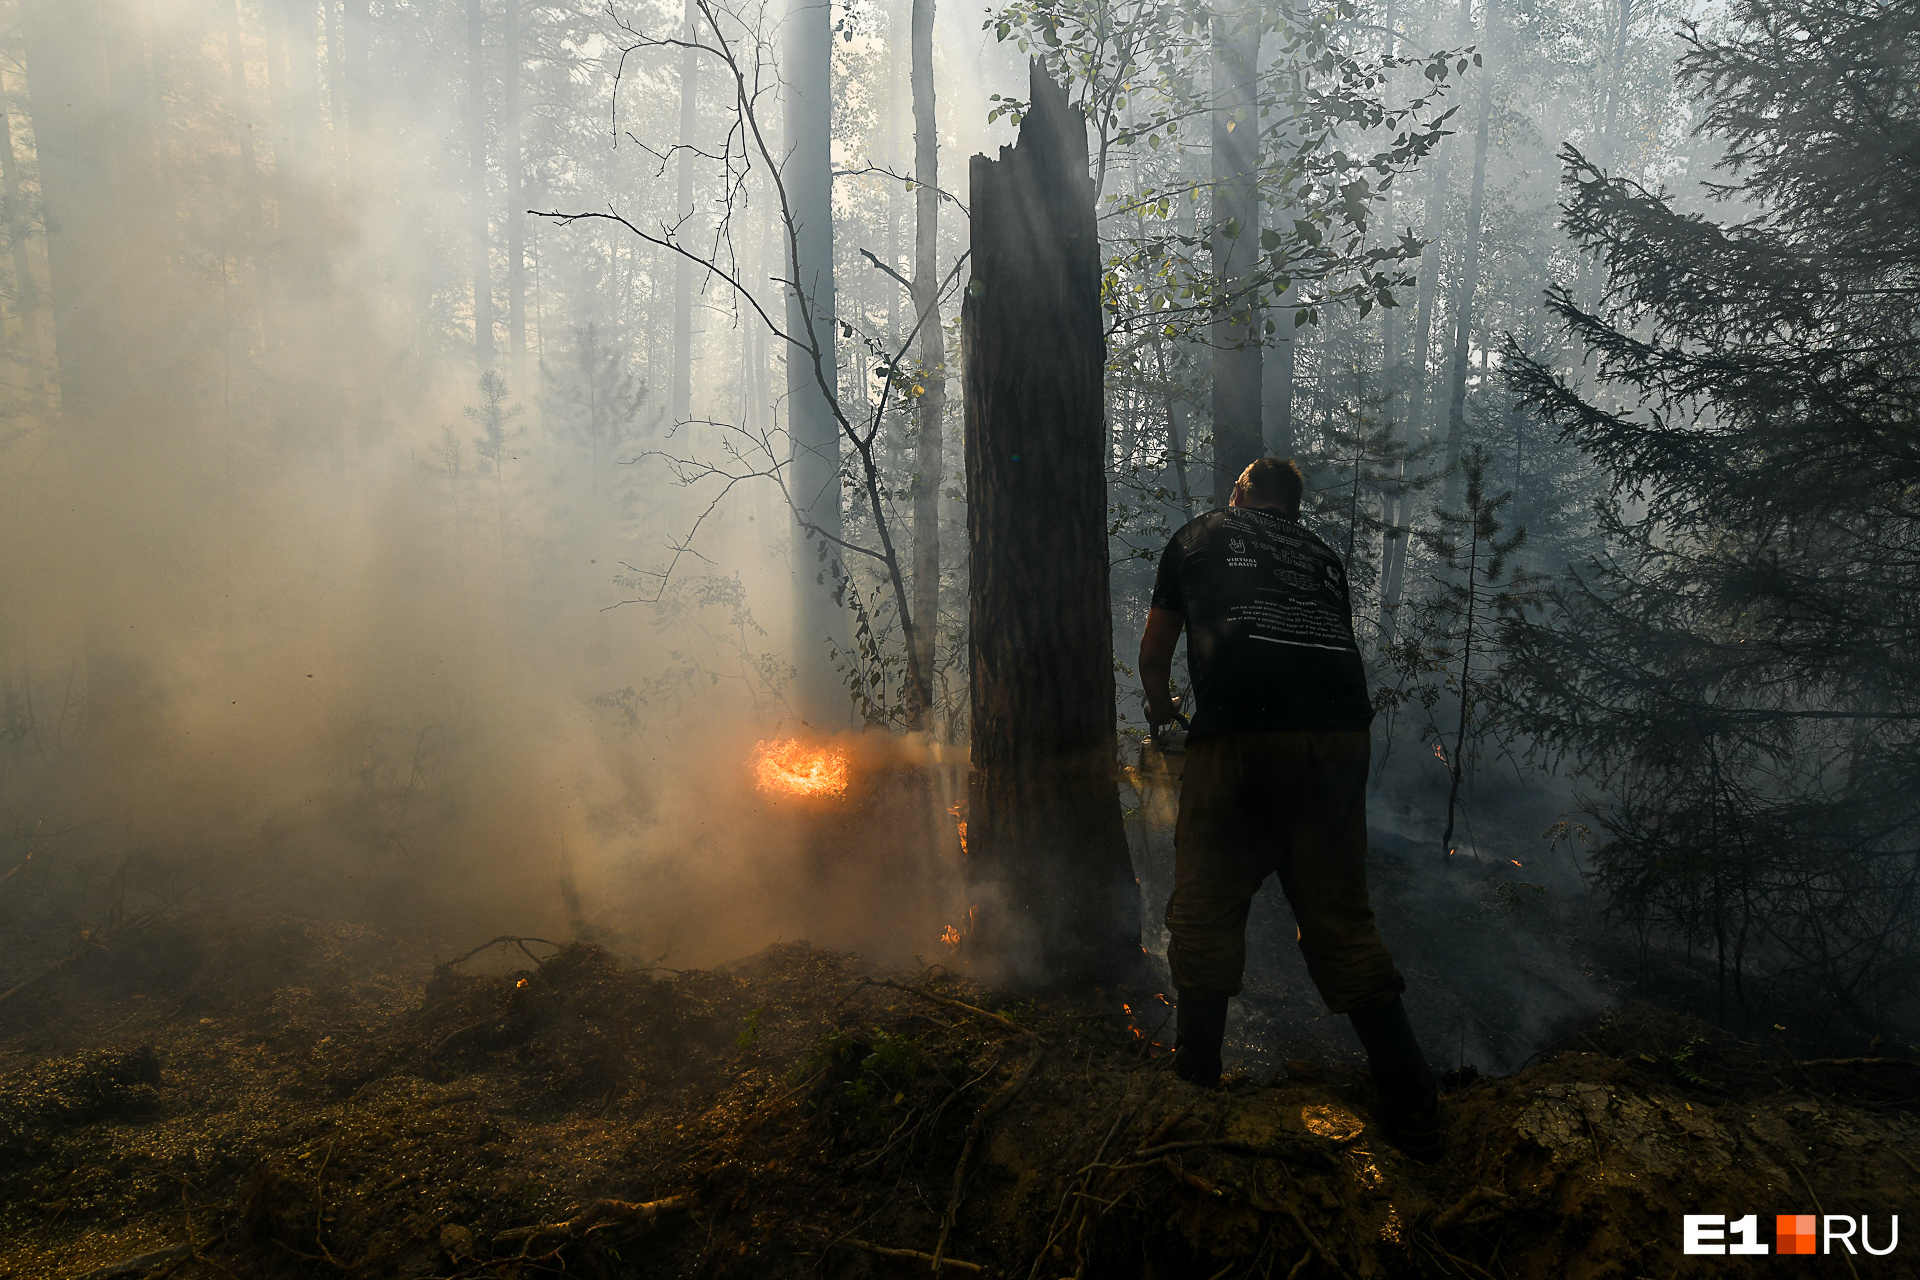 Суд приговорил к обязательным работам рыбака, который устроил лесной пожар в Забайкалье